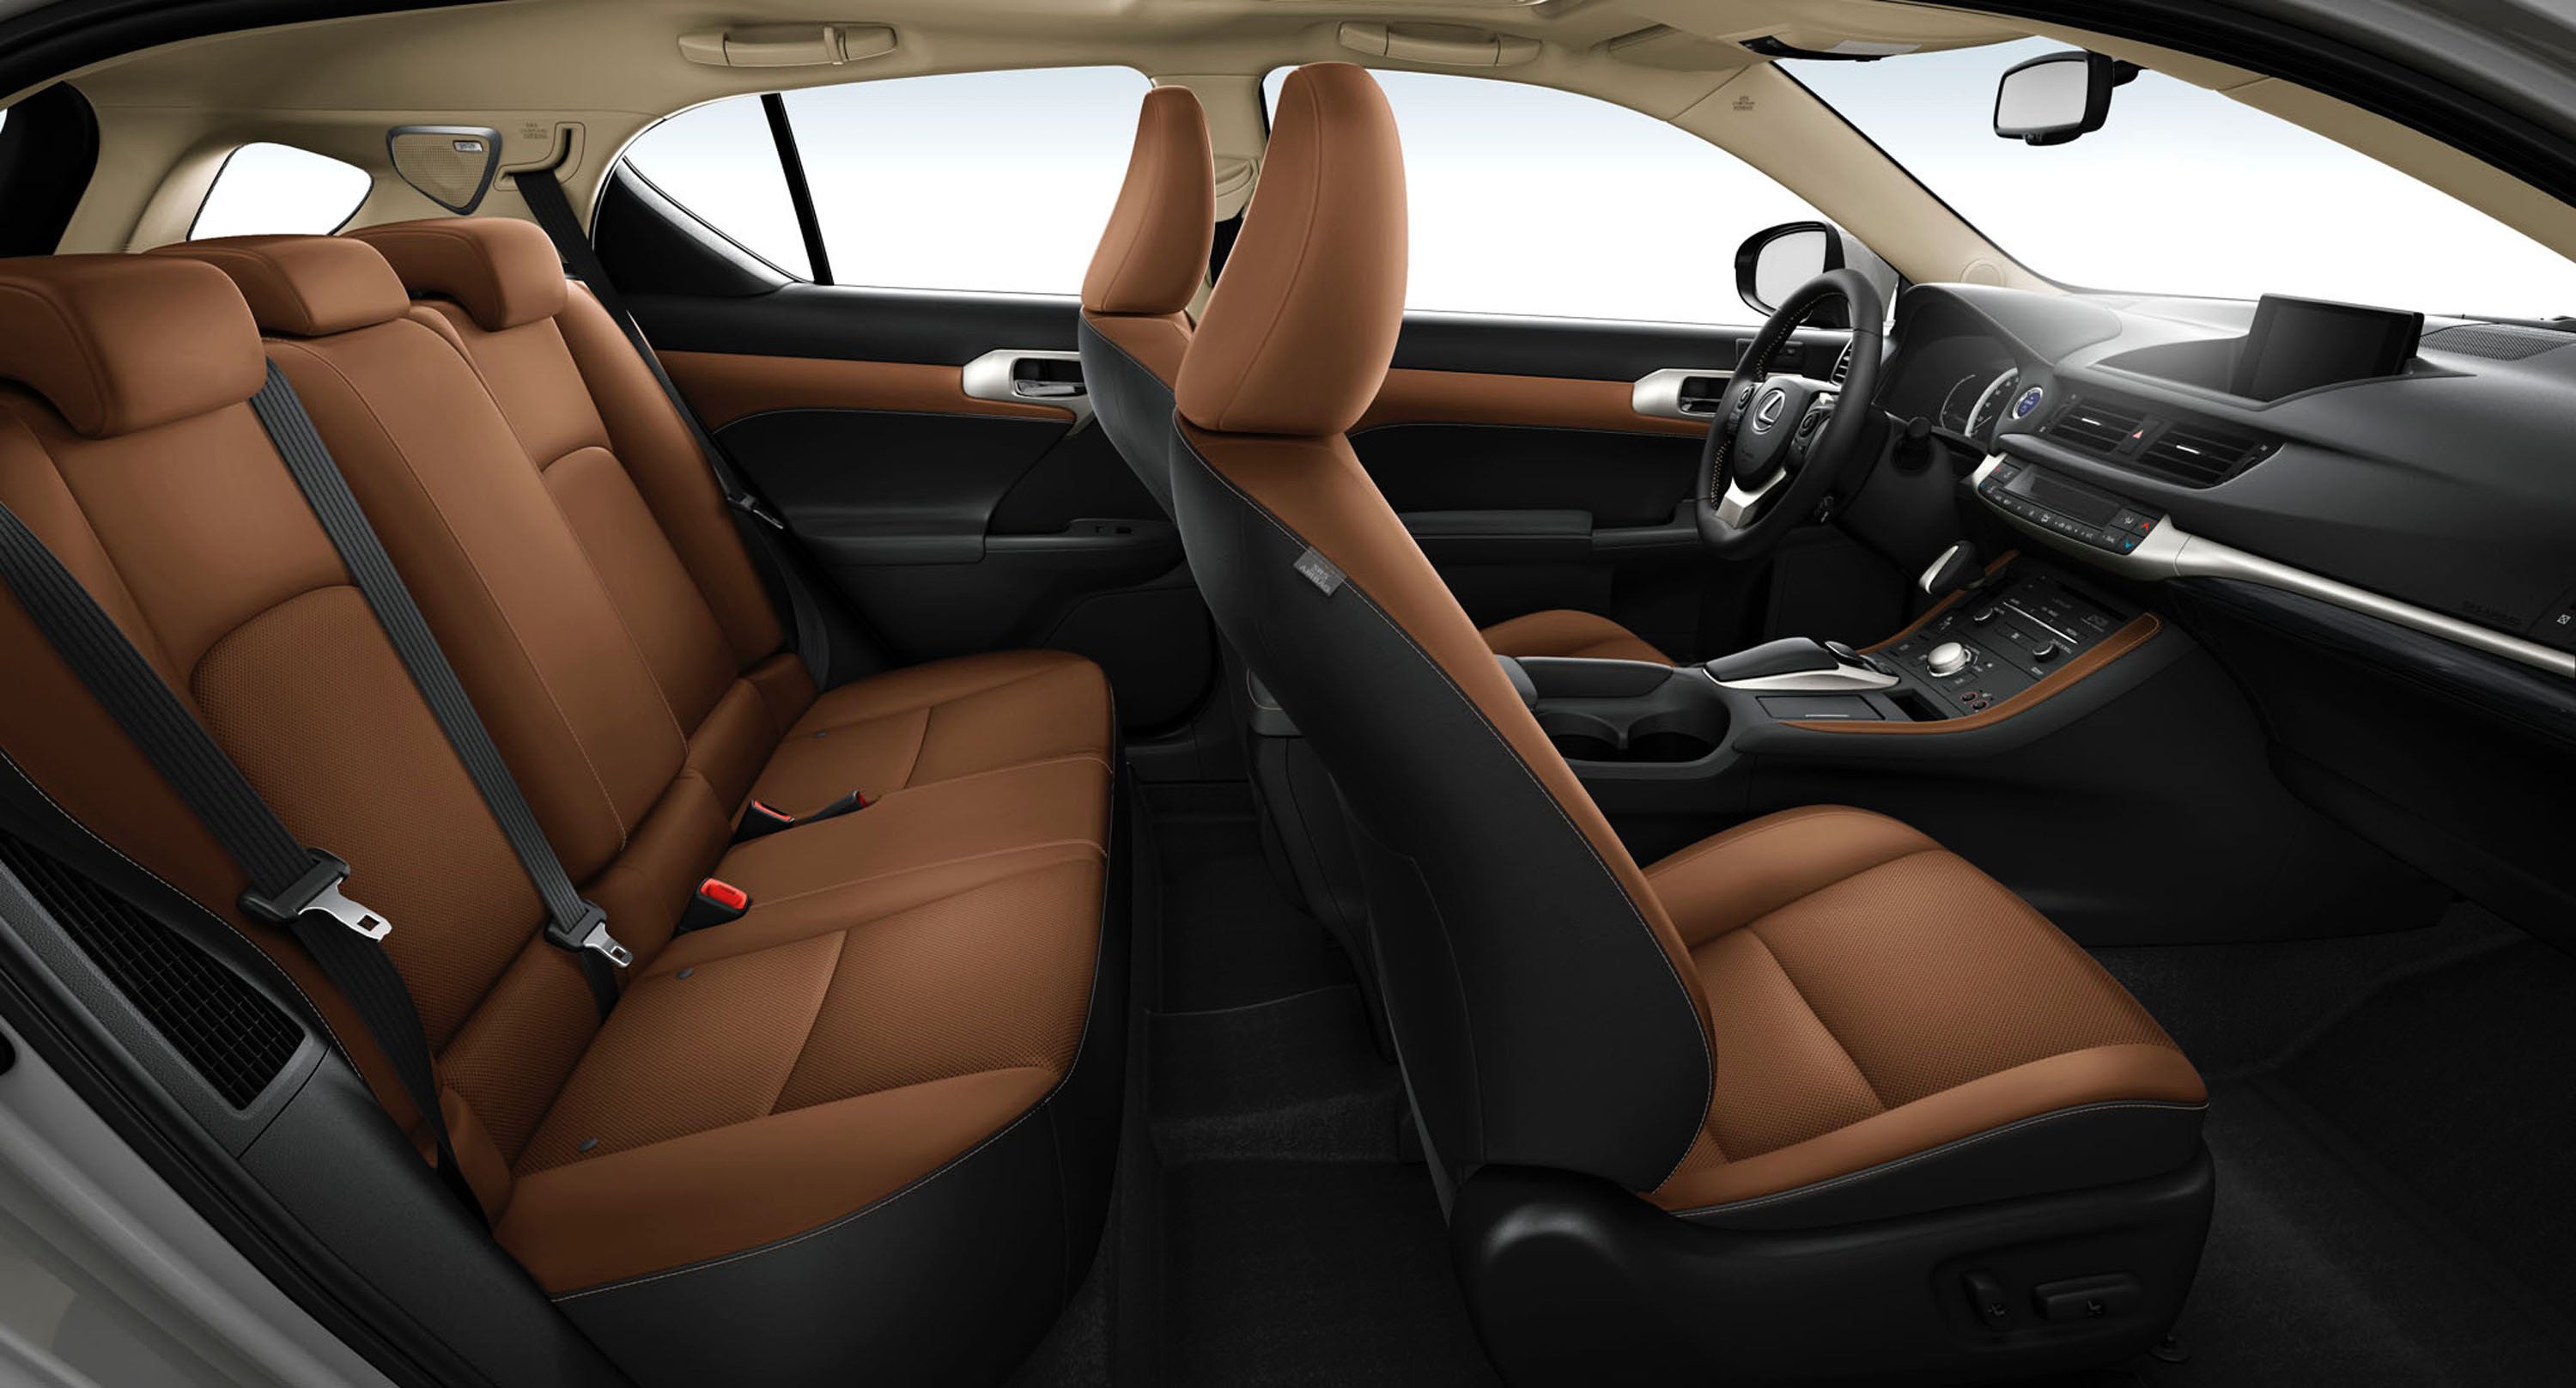 Lexus CT200h interior - Seats